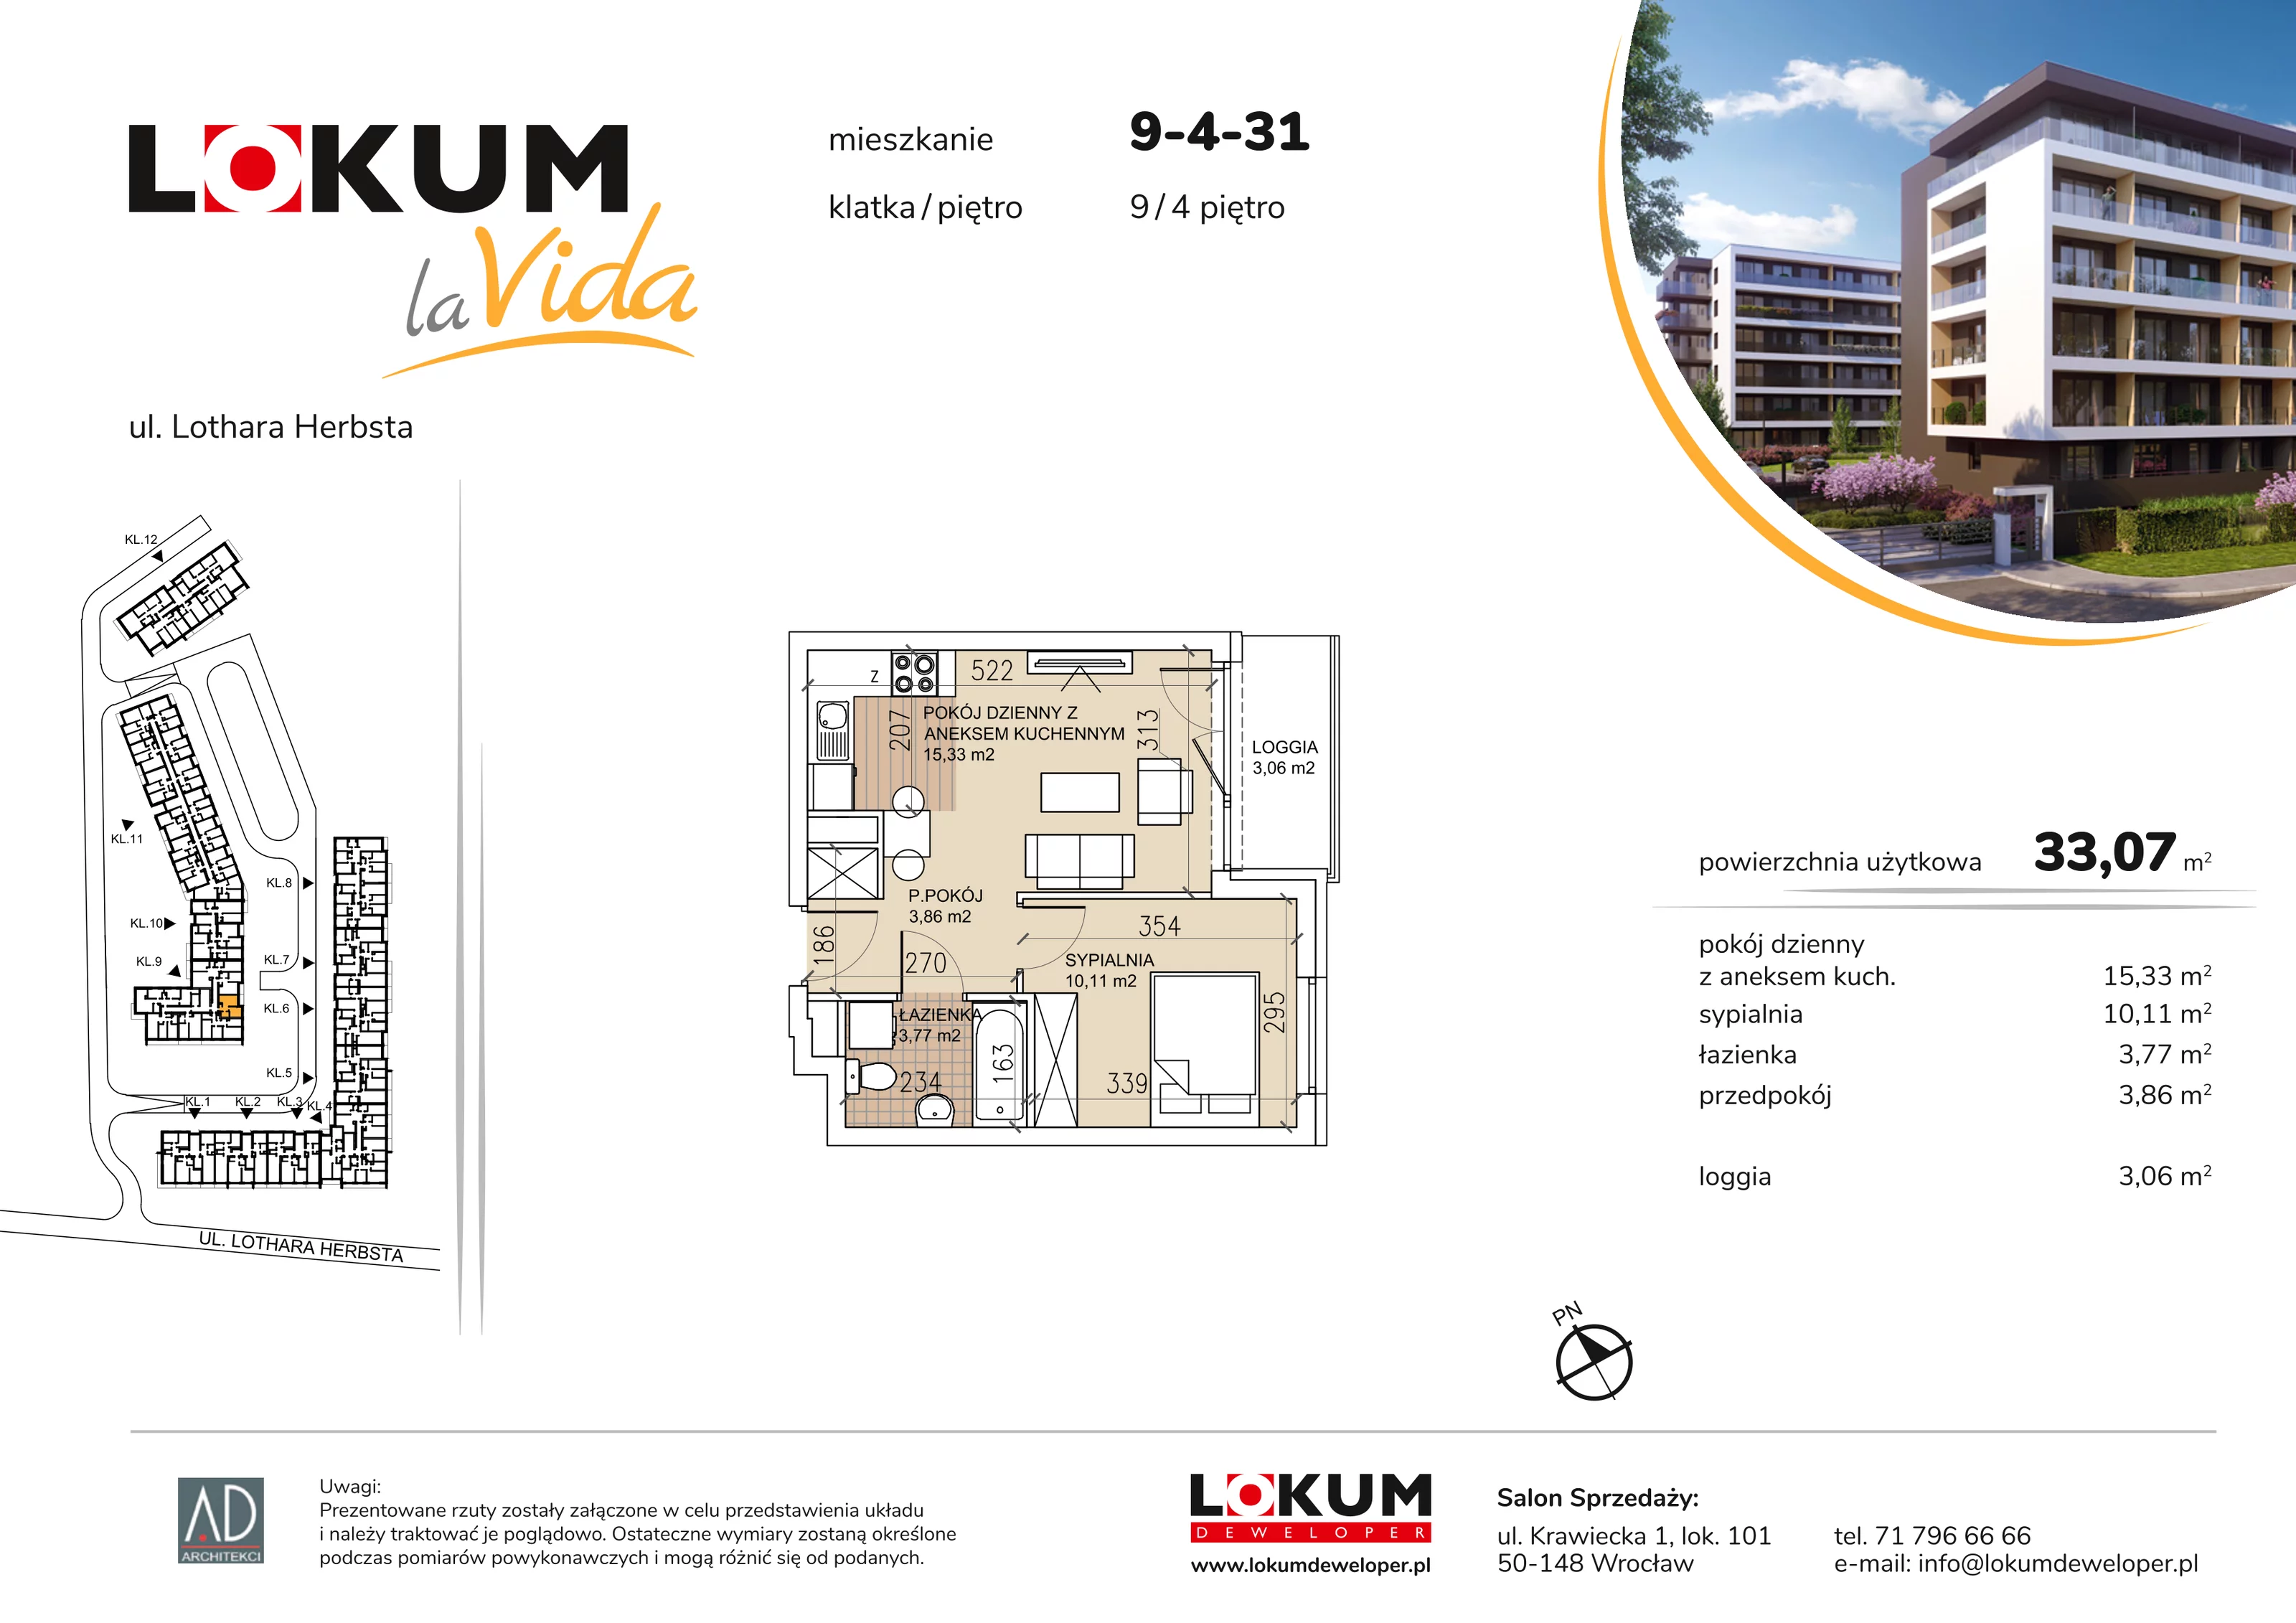 Mieszkanie 33,07 m², piętro 4, oferta nr 9-4-31, Lokum la Vida, Wrocław, Sołtysowice, ul. Lothara Herbsta